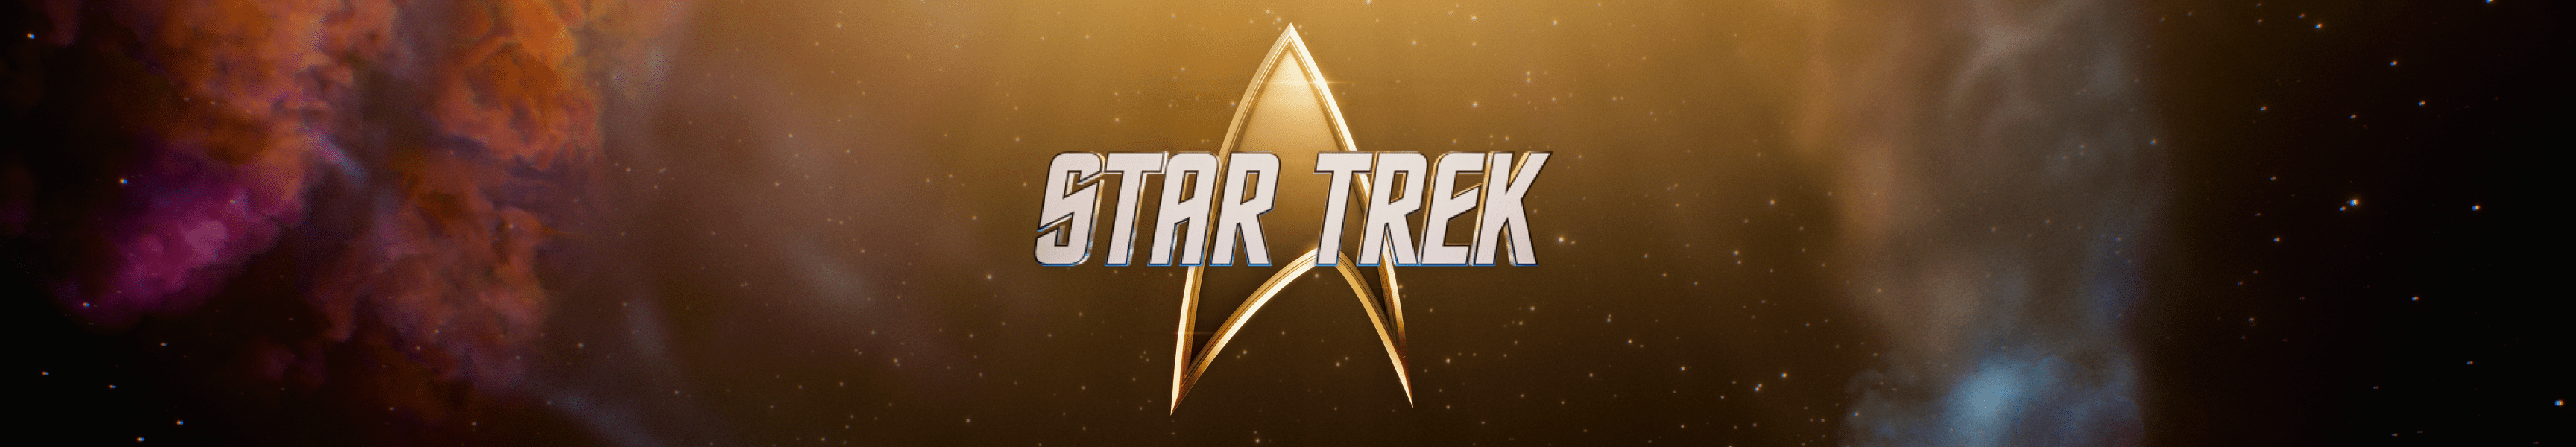 Star Trek Regalos por menos de 25